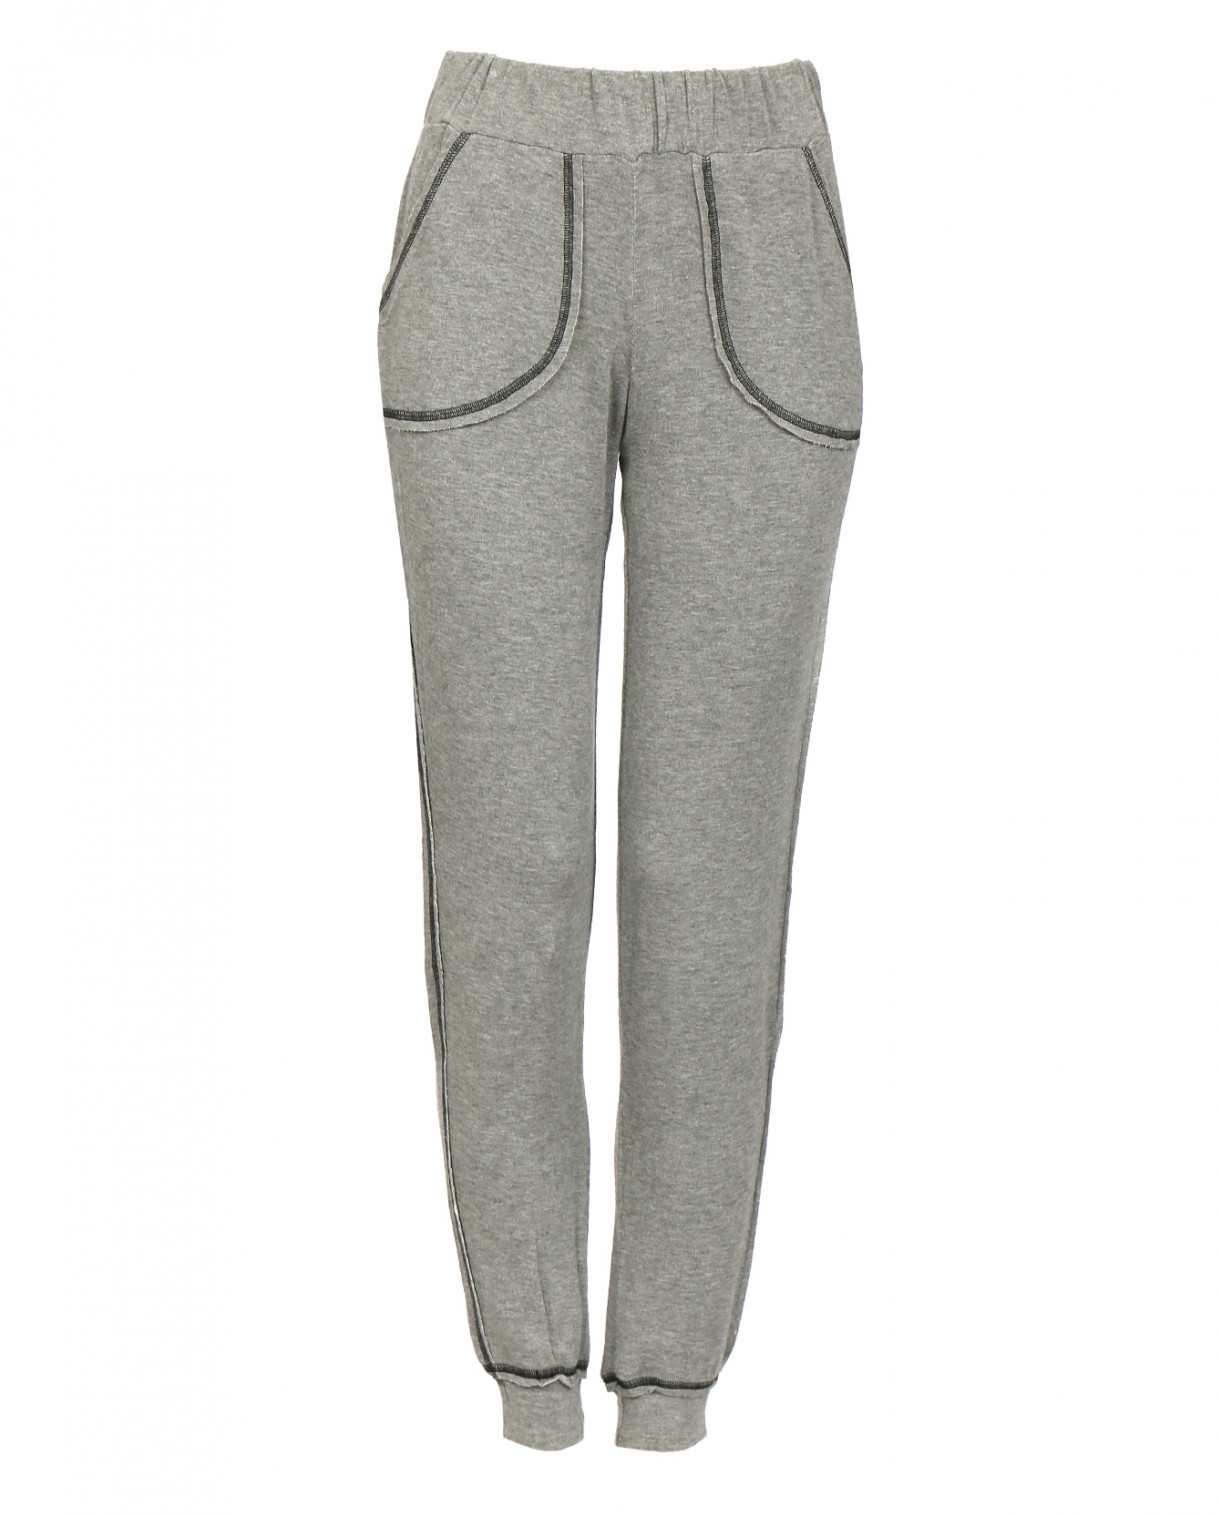 Легкие трикотажные брюки на резинке Twin Set  –  Общий вид  – Цвет:  Серый